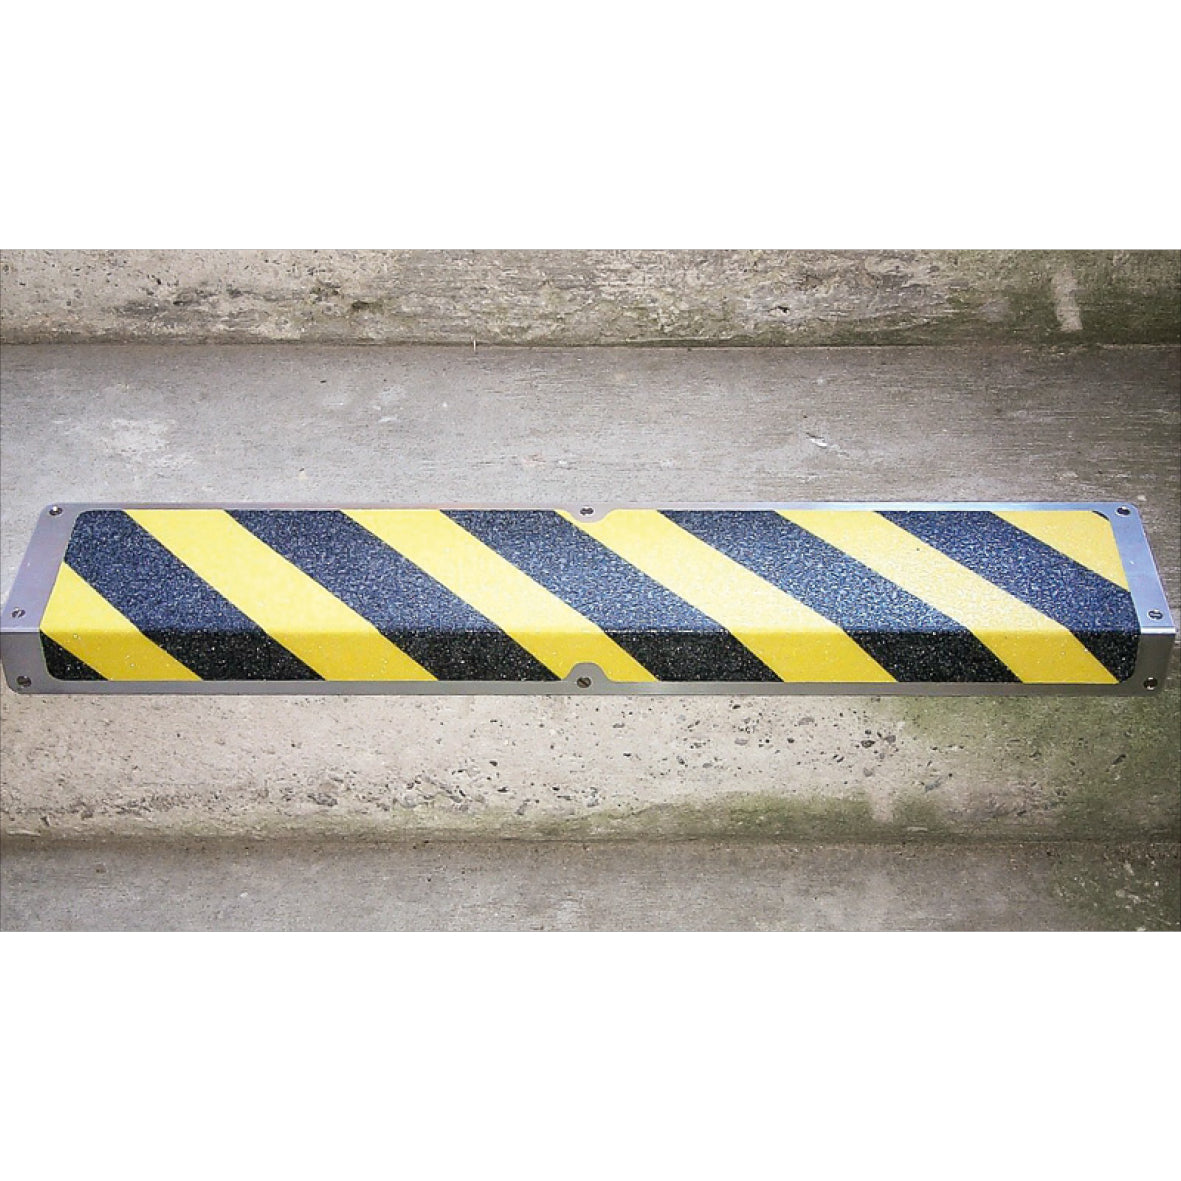 Antirutsch Treppkante Alu, Nachleuchtend SG "Slippery Floor"120x635x45mm